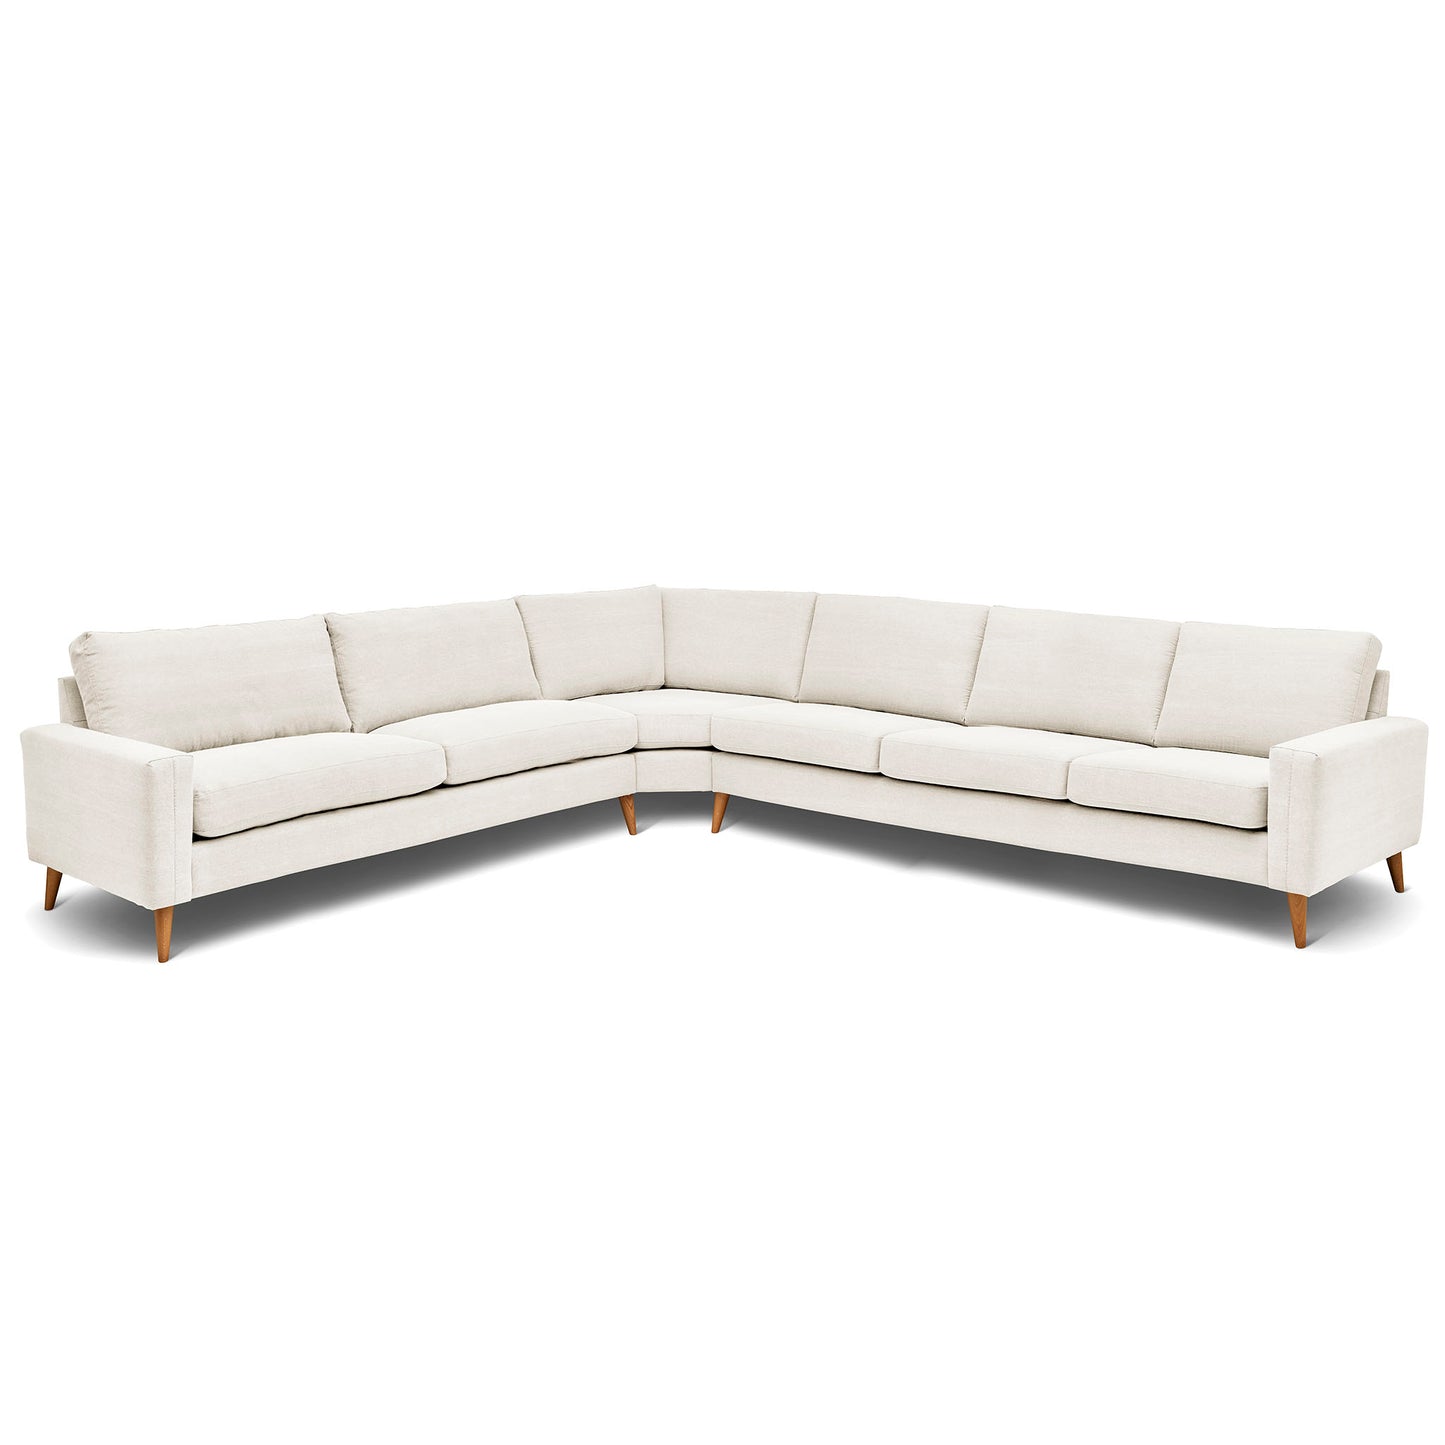 Stor rektangulär hörnsoffa med måttet 321x360 cm. Sittvänlig soffa för äldre i vitt tyg